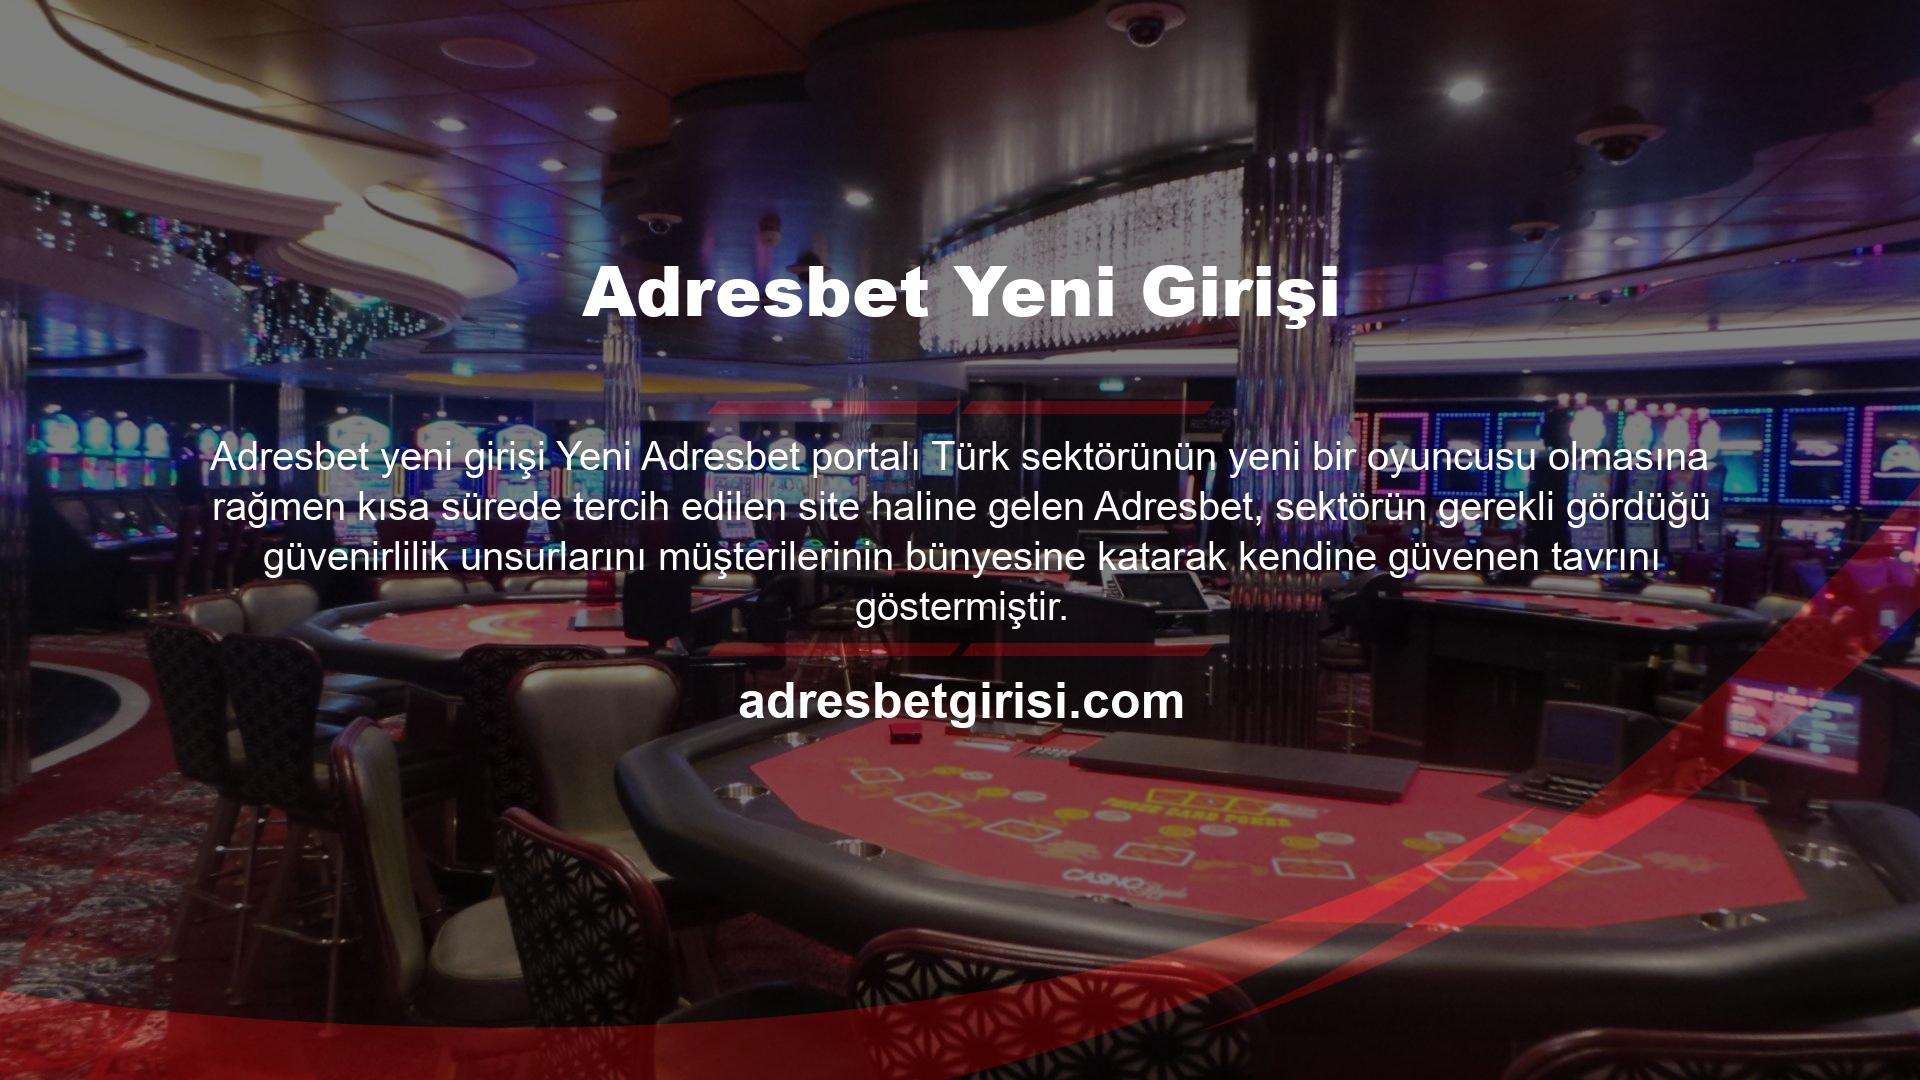 Site, müşterilerine sunduğu tüm hizmetlerde profesyonel kadrosu ve kendine güvenen tavrıyla son dönemde Türkiye pazarına girme konusunda en iddialı site